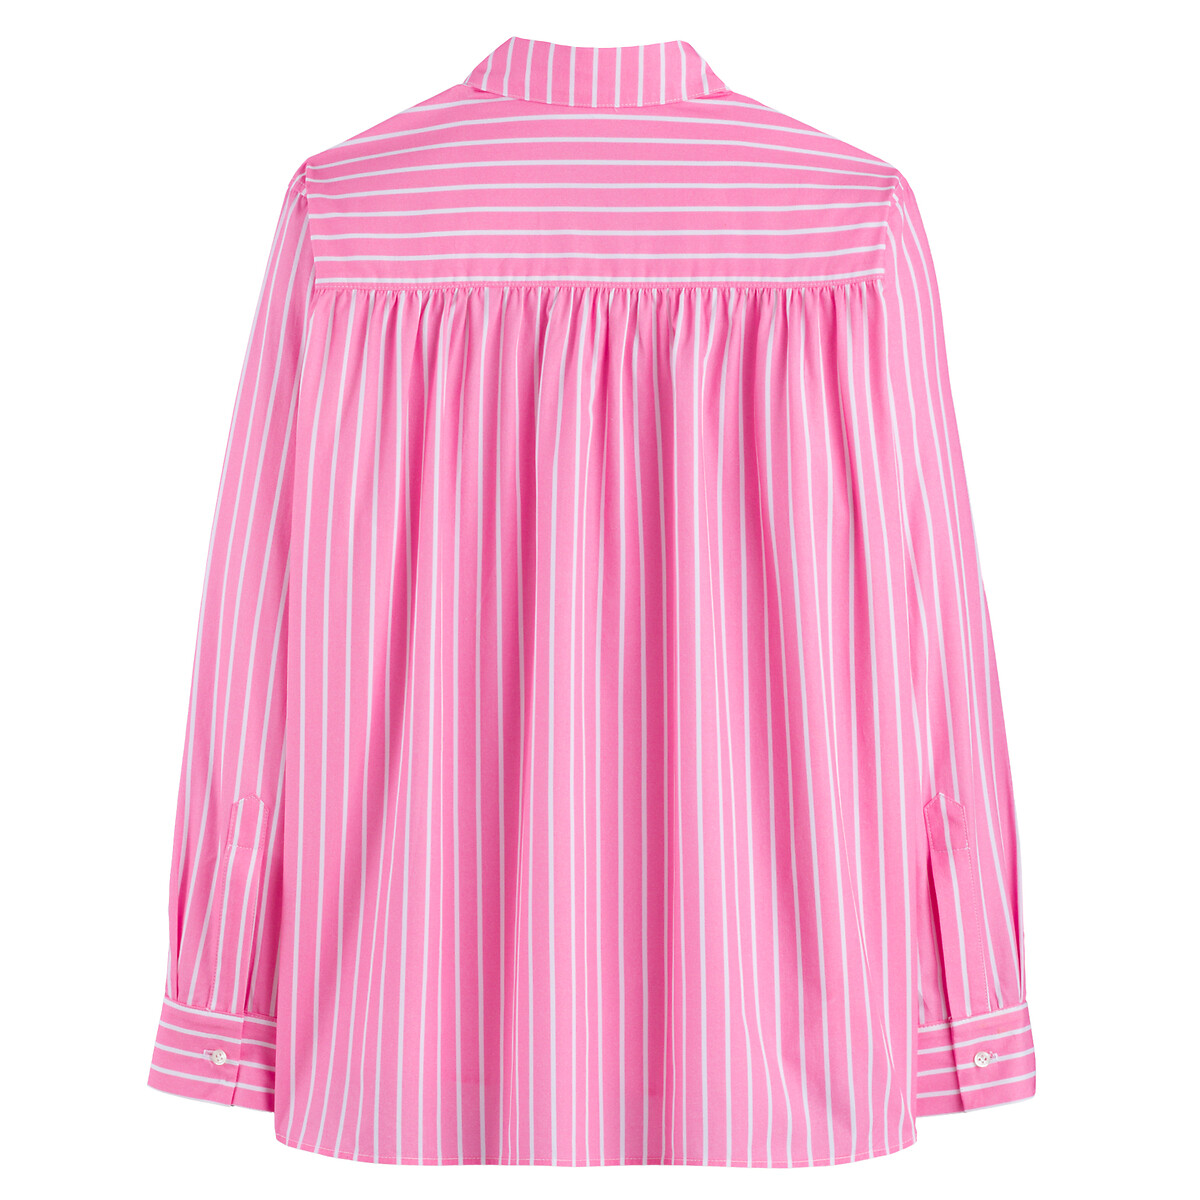 Рубашка В полоску с длинными рукавами 38 (FR) - 44 (RUS) розовый LaRedoute, размер 38 (FR) - 44 (RUS) Рубашка В полоску с длинными рукавами 38 (FR) - 44 (RUS) розовый - фото 3